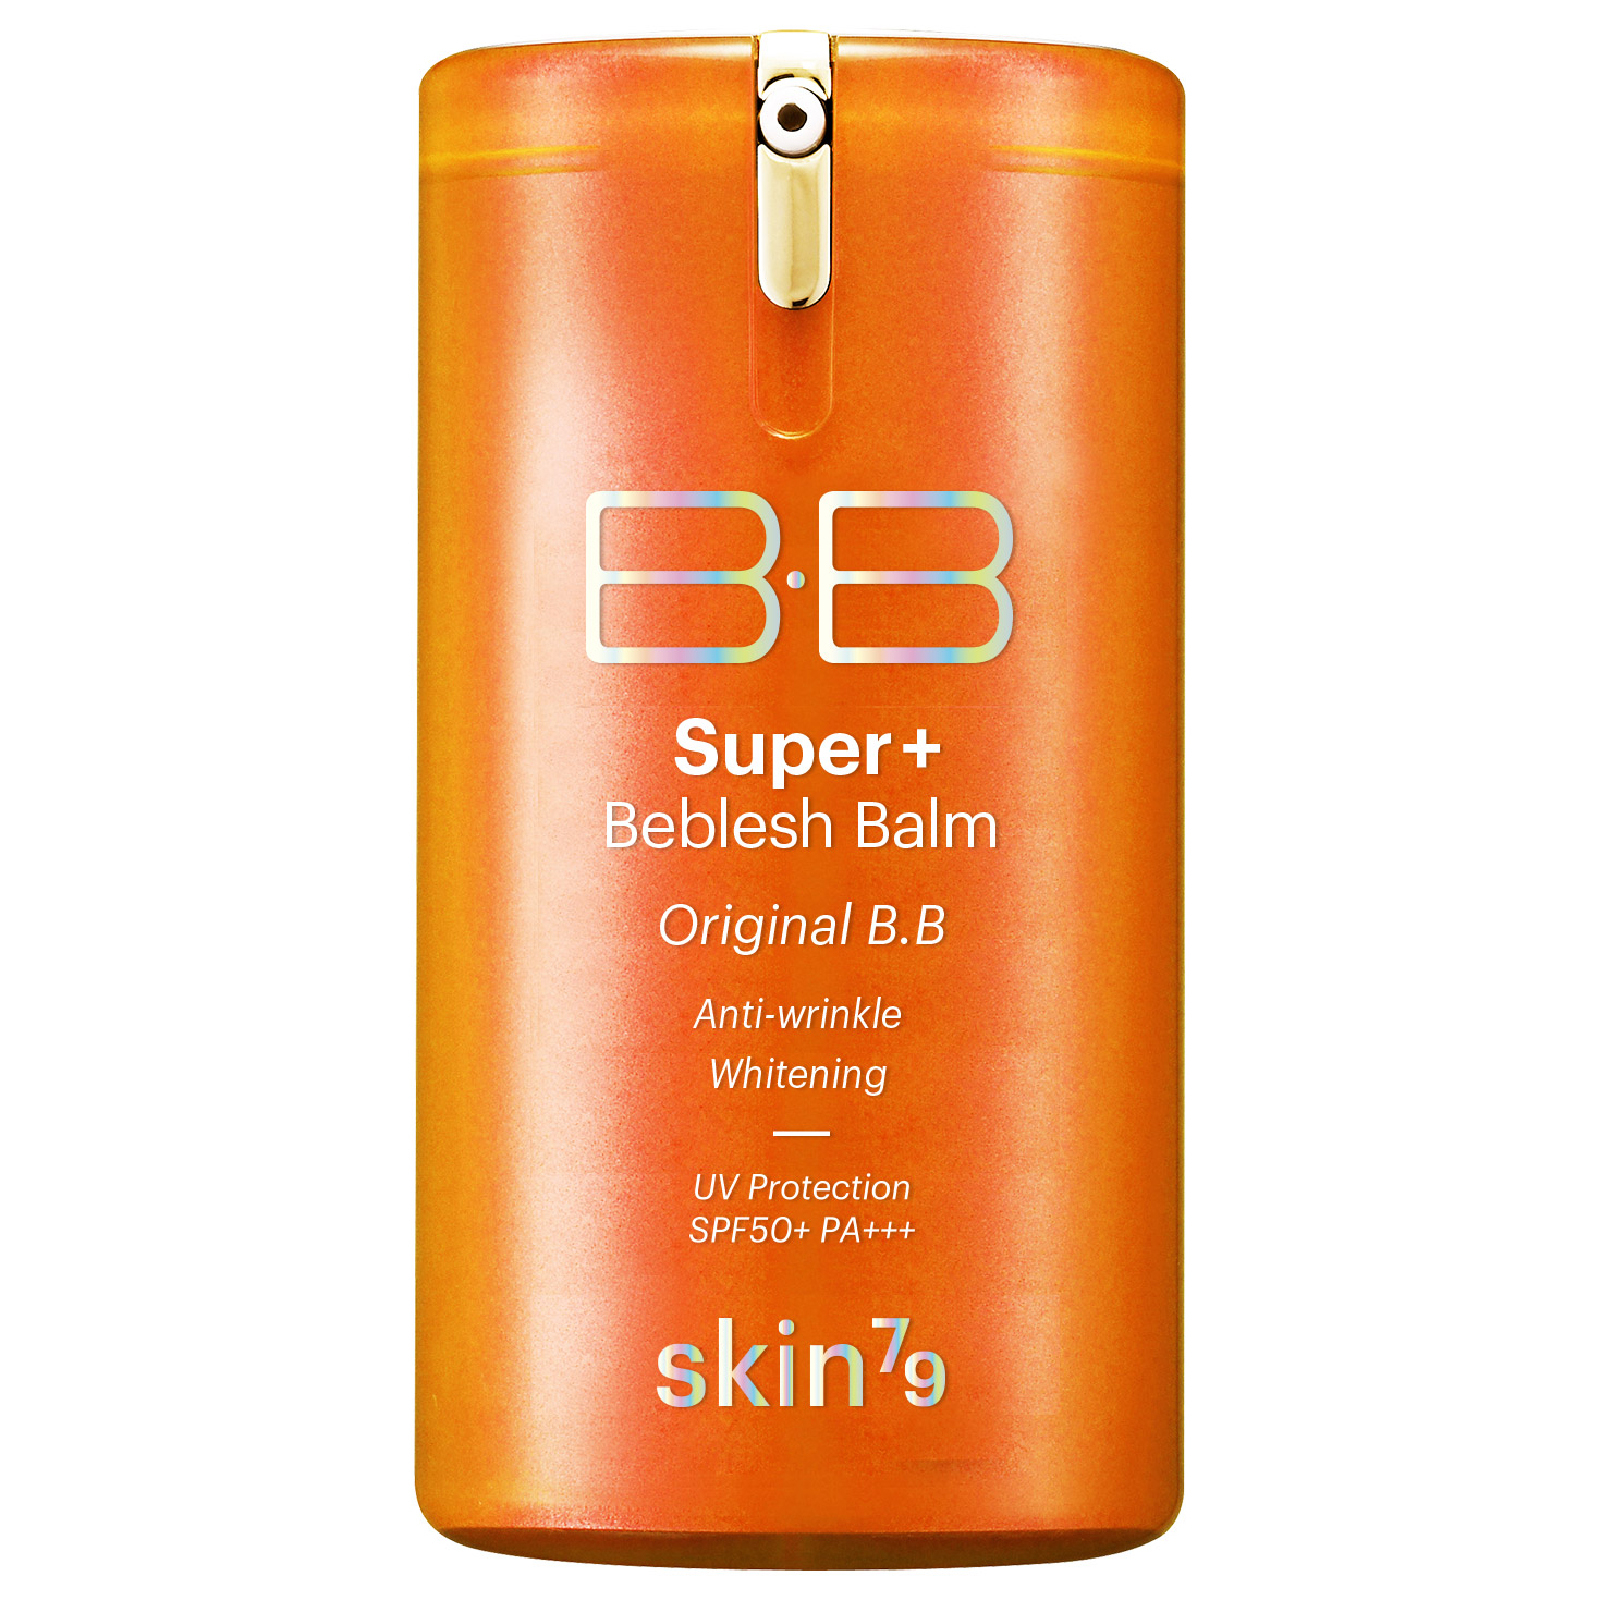 Bálsamo Super Plus Beblesh de triple función con FPS 50+ PA+++ de Skin79 40 g - Orange